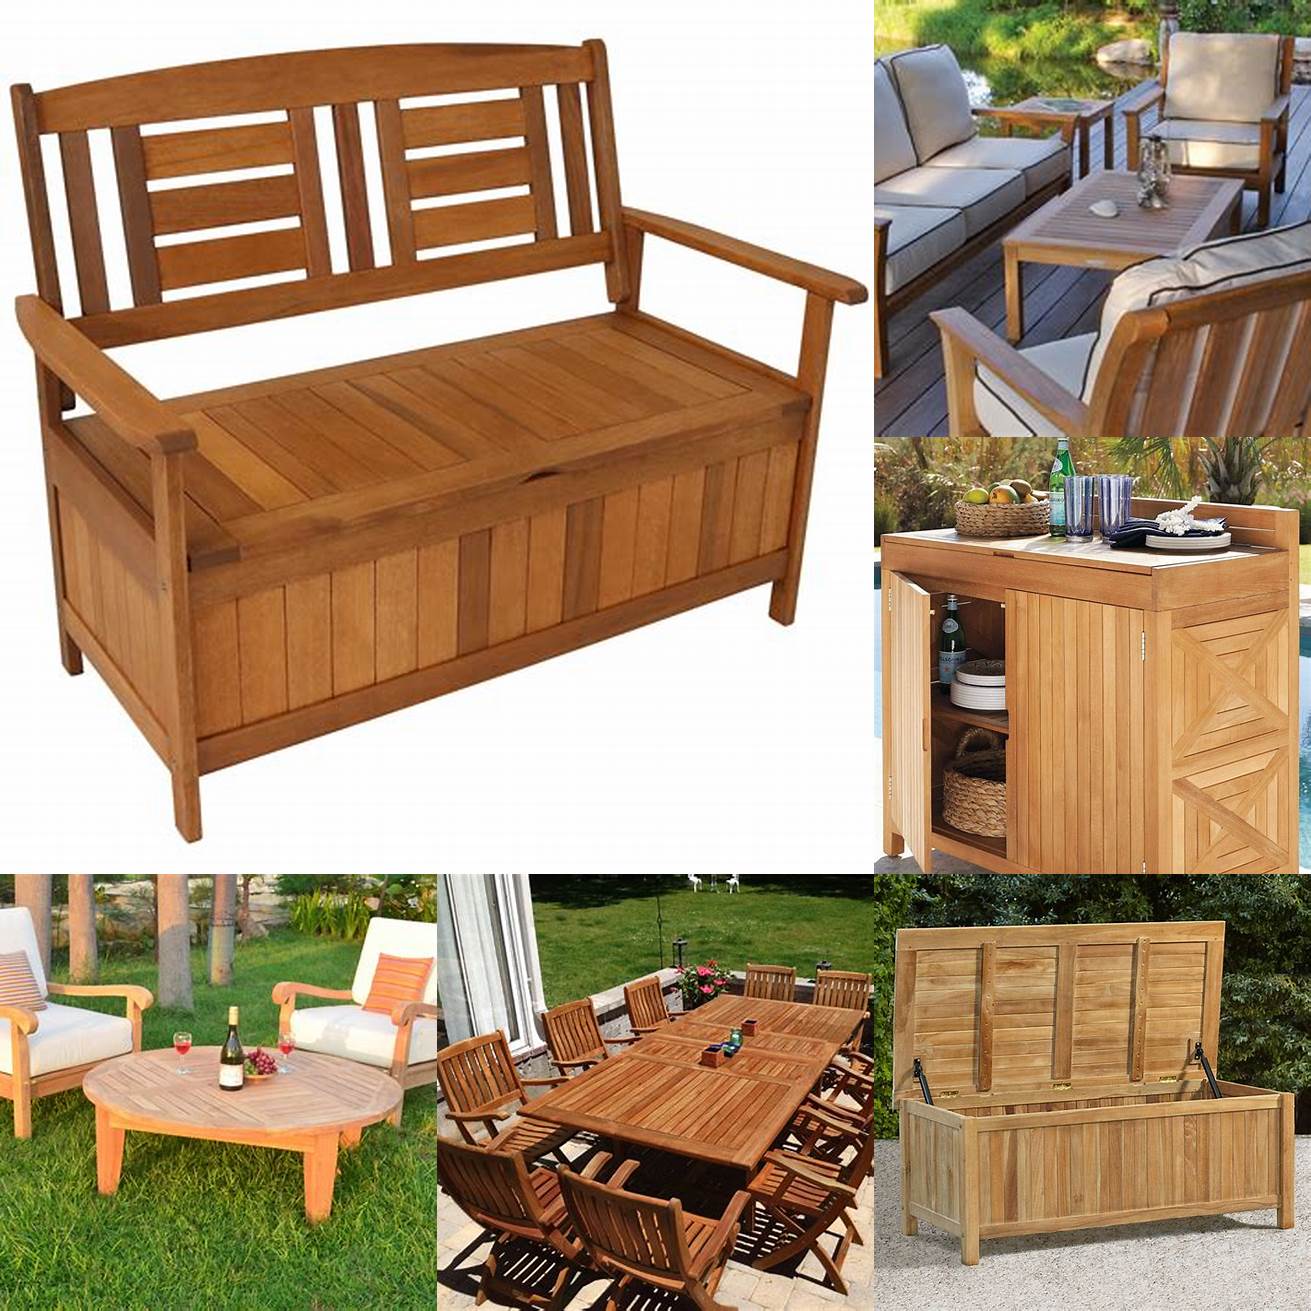 Storing Teak Wood Patio Furniture